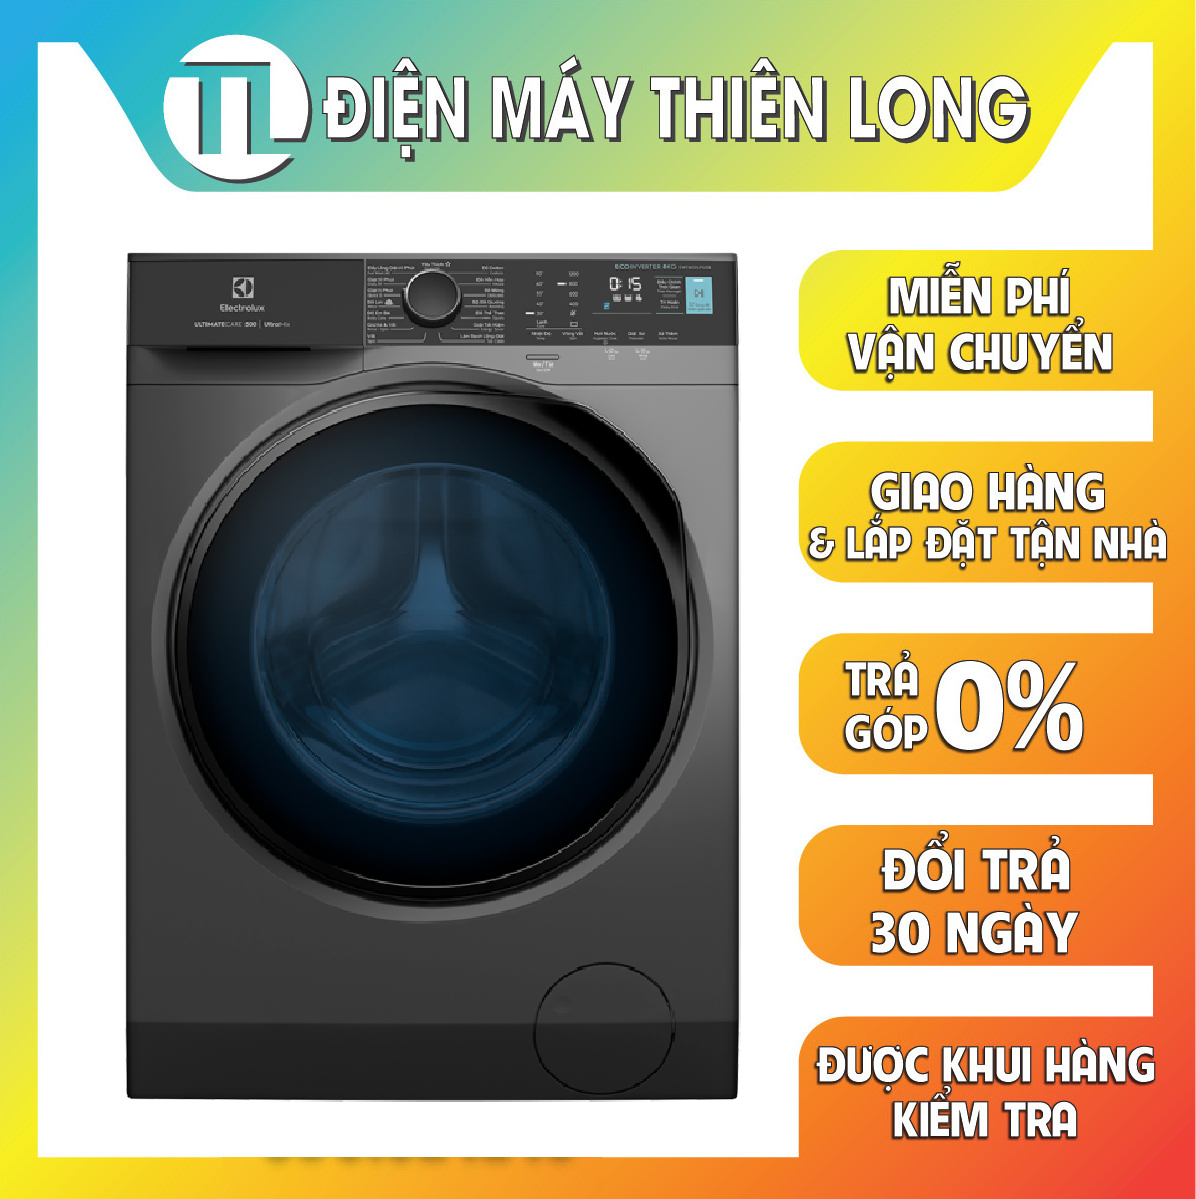 [Miễn phí lắp đặt] Máy giặt cửa trước Electrolux 8kg UltimateCare 500 - EWF8024P5SB - Diệt 99.9% vi khuẩn, giảm dị ứng, giặt sạch sâu, tiết kiệm điện hơn 50% [Hàng Chính Hãng]